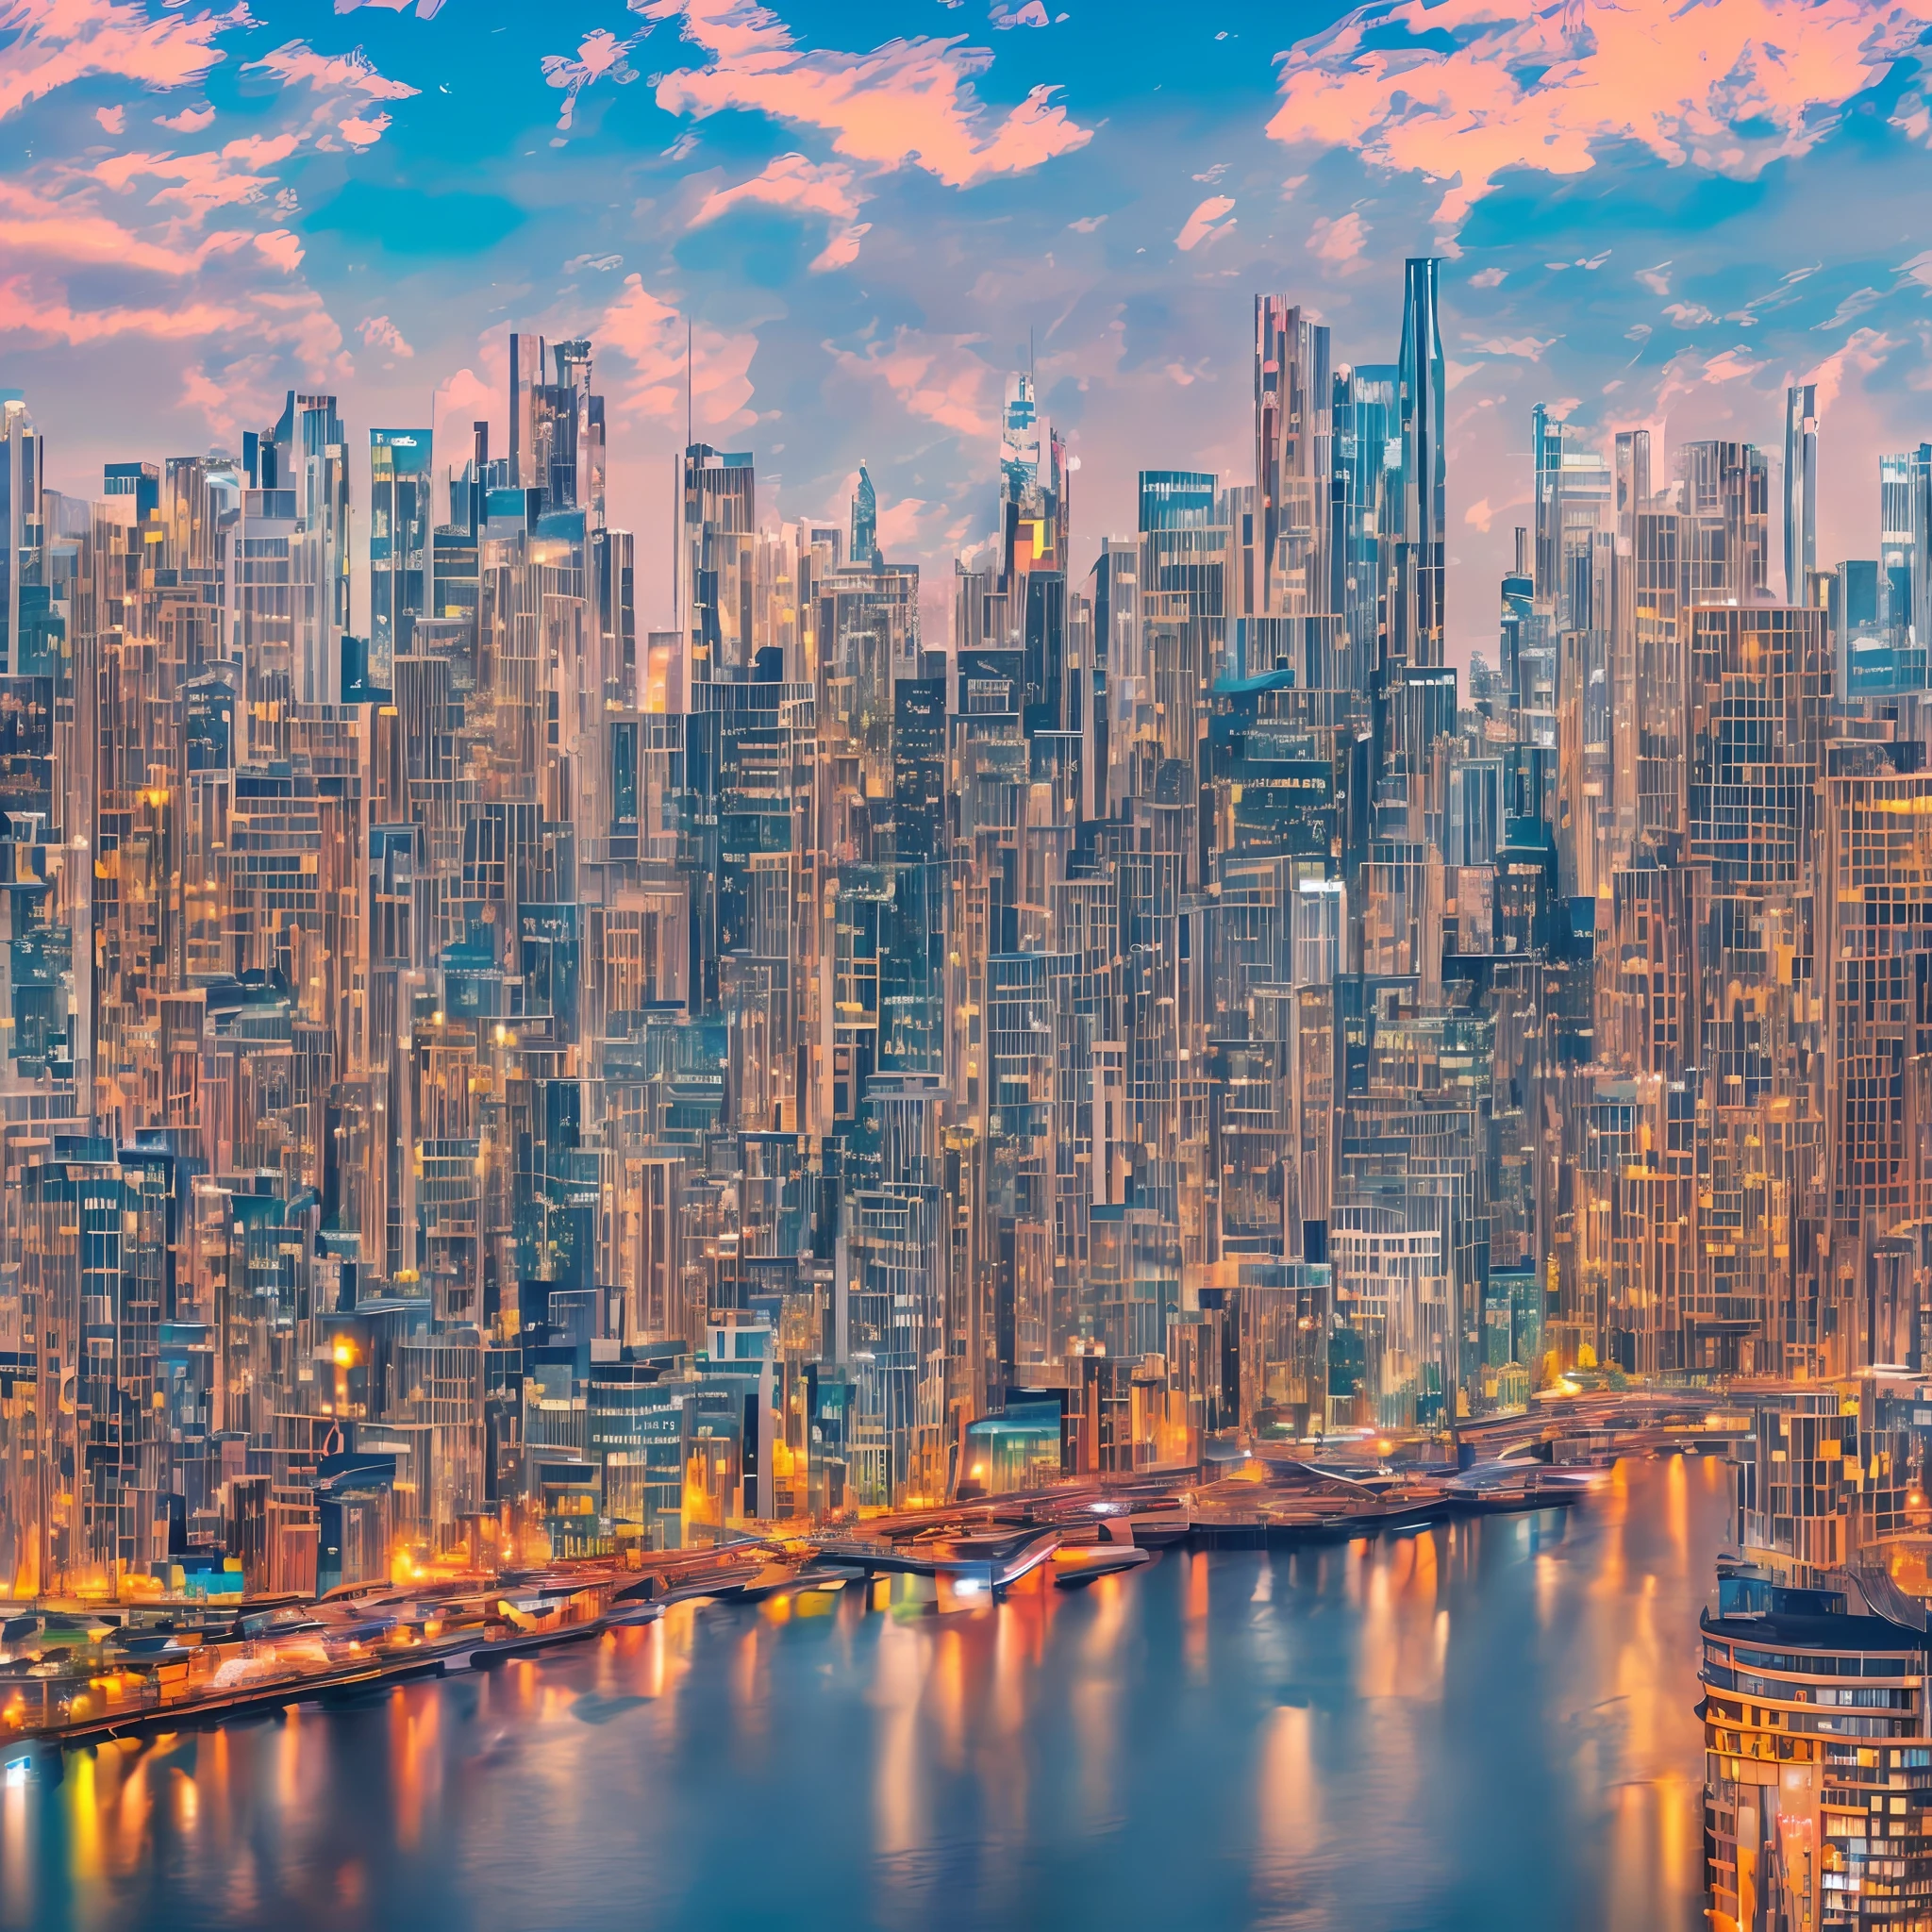 Das Stadtbild fotorealistisch in lebendigen Farben dargestellt, der Szene eine lebendige und dynamische Atmosphäre verleihen, Ultra-High-Definition – Auto – S2